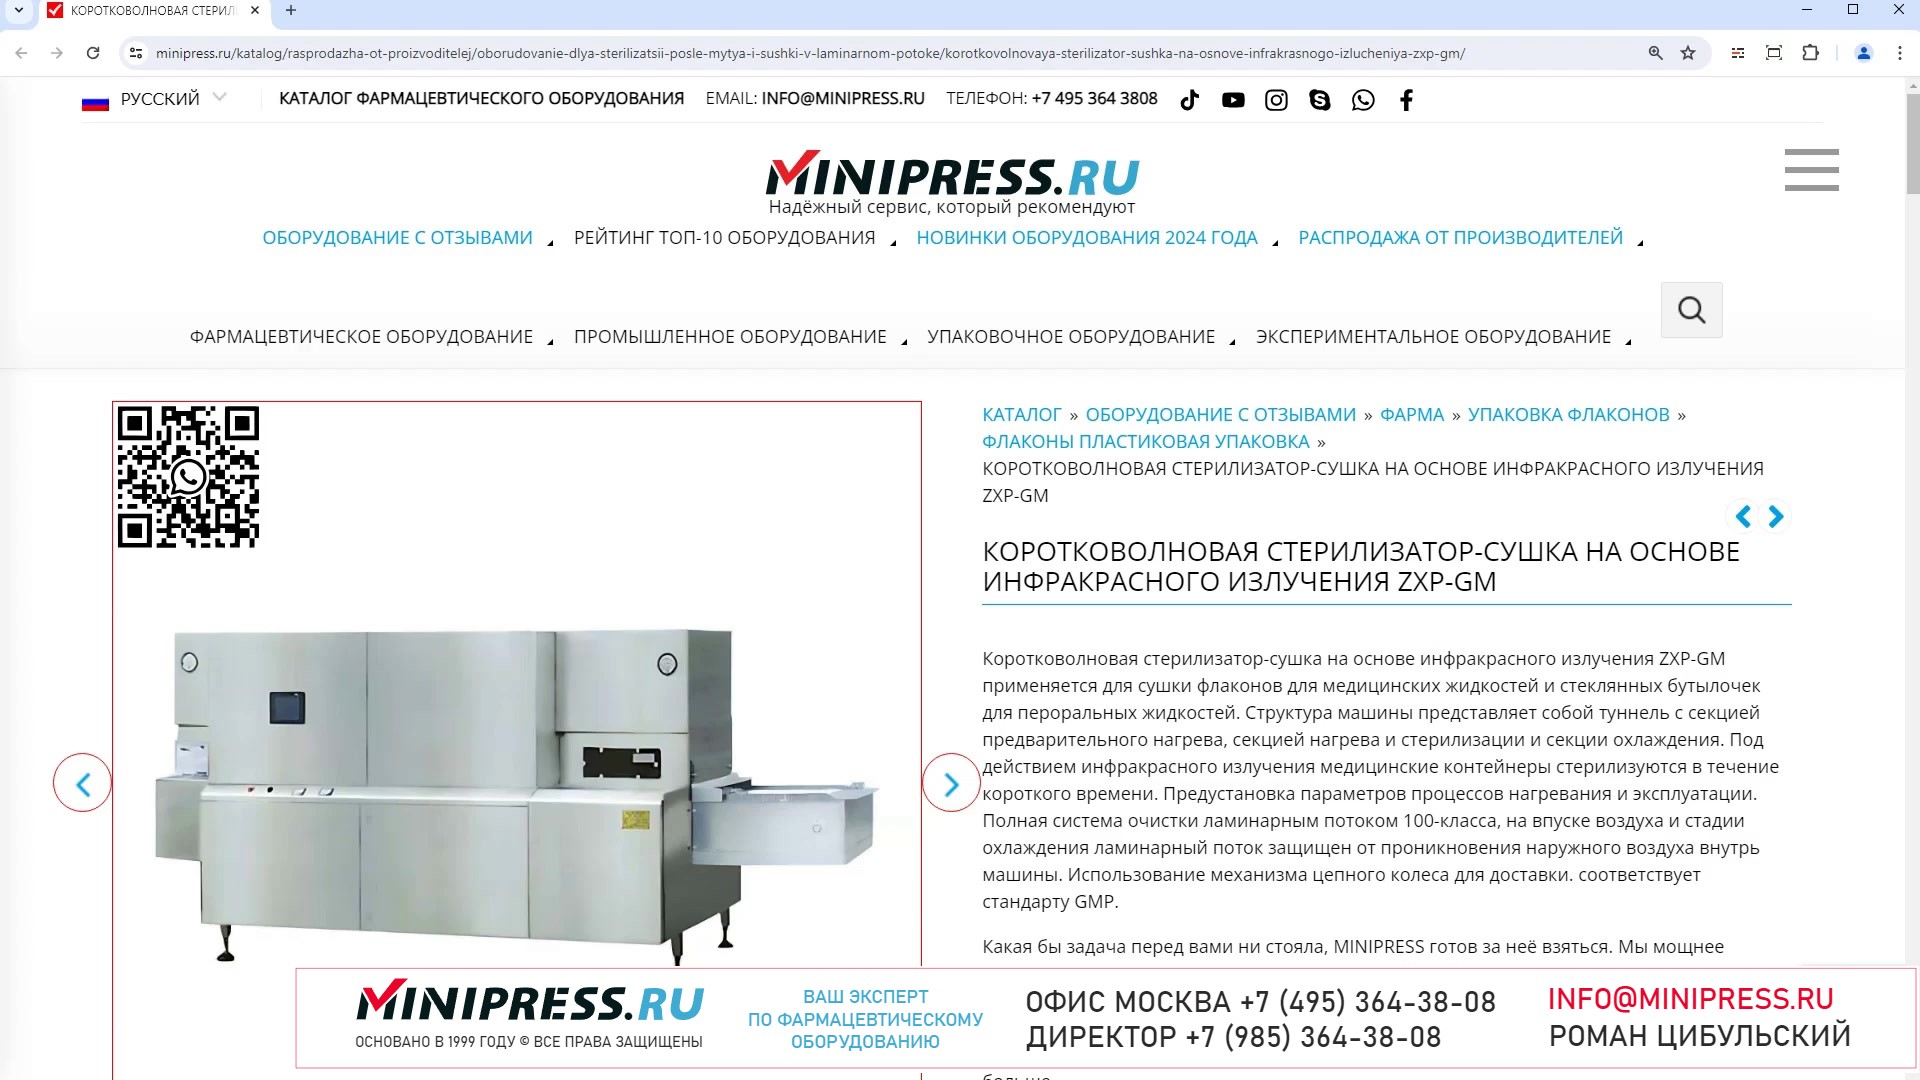 Minipress.ru Коротковолновая стерилизатор-сушка на основе инфракрасного излучения ZXP-GM